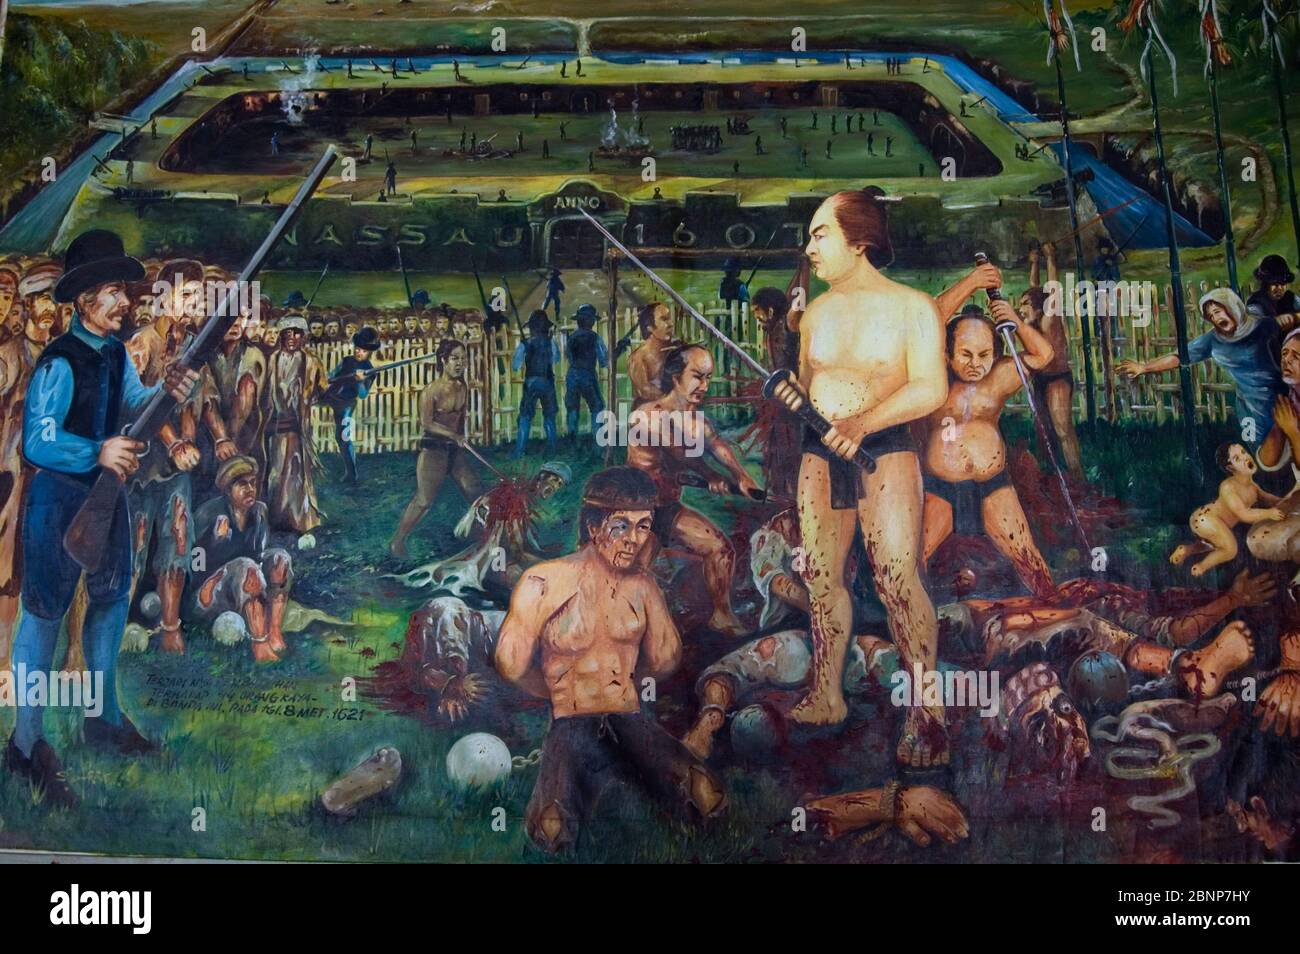 Grausames Gemälde des Banda-Massakers, in dem die frühen holländischen Siedler 1621 Einheimische schlachteten, Museum, Banda Neira, Banda Sea, Molukken, Indonesien Stockfoto